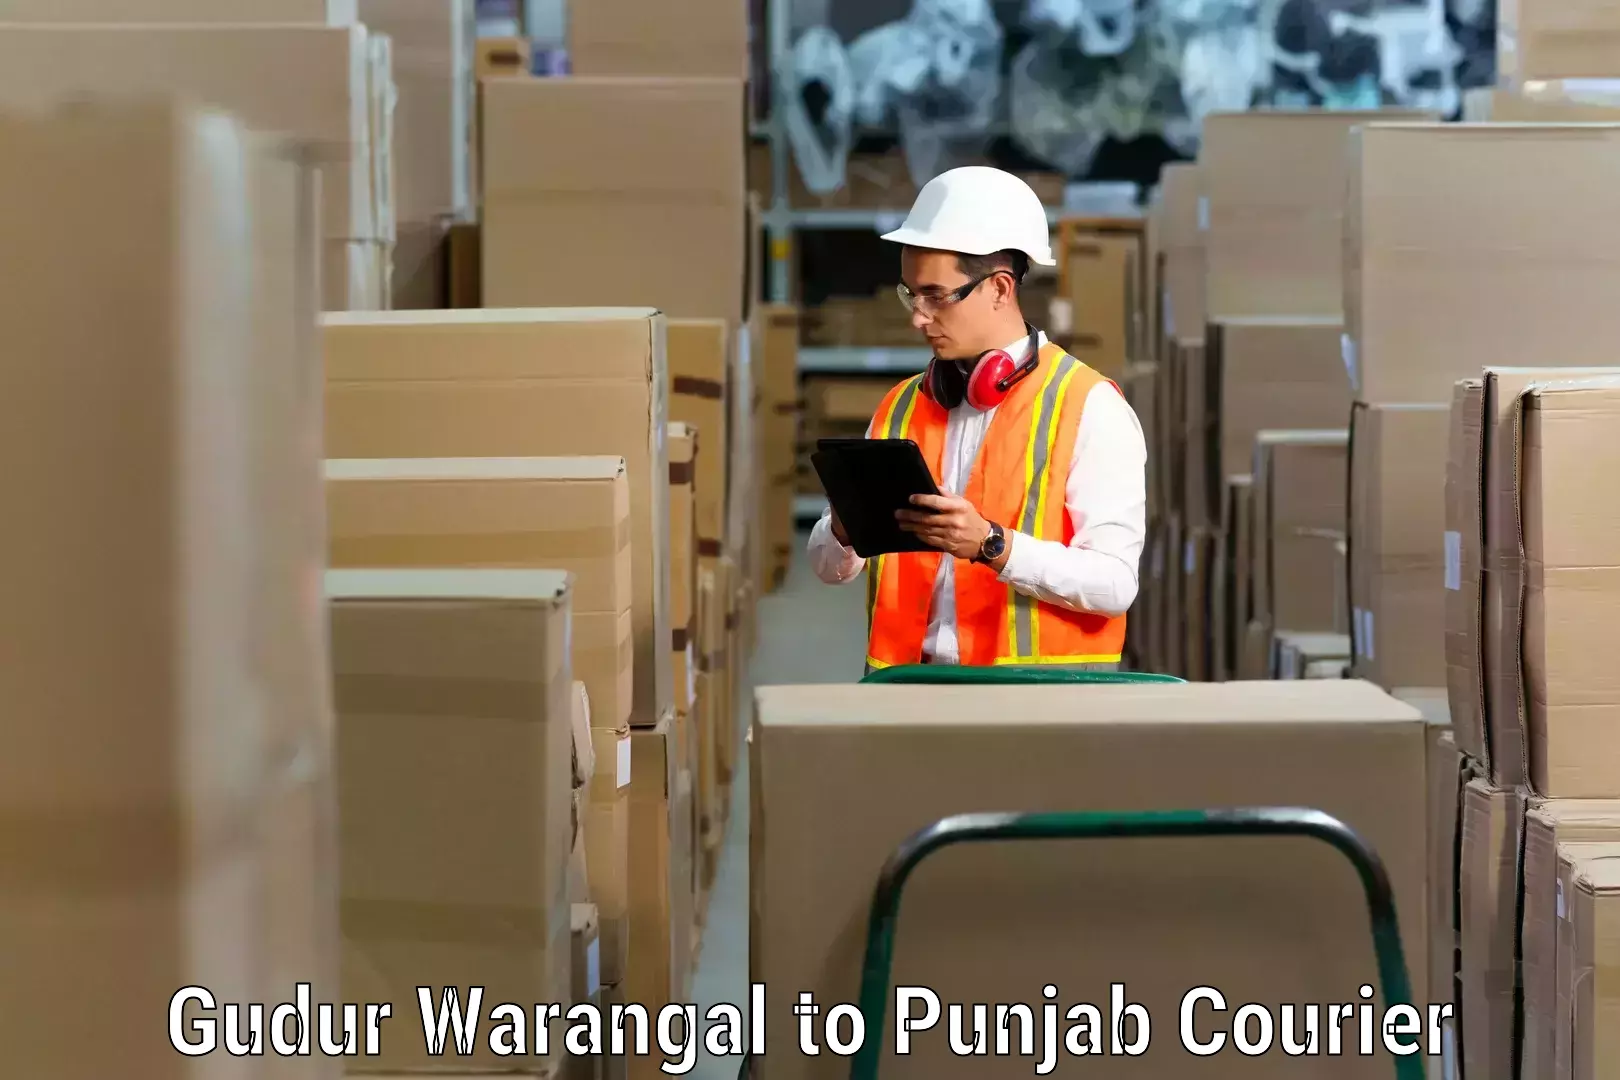 Furniture transport and storage Gudur Warangal to Mandi Gobindgarh